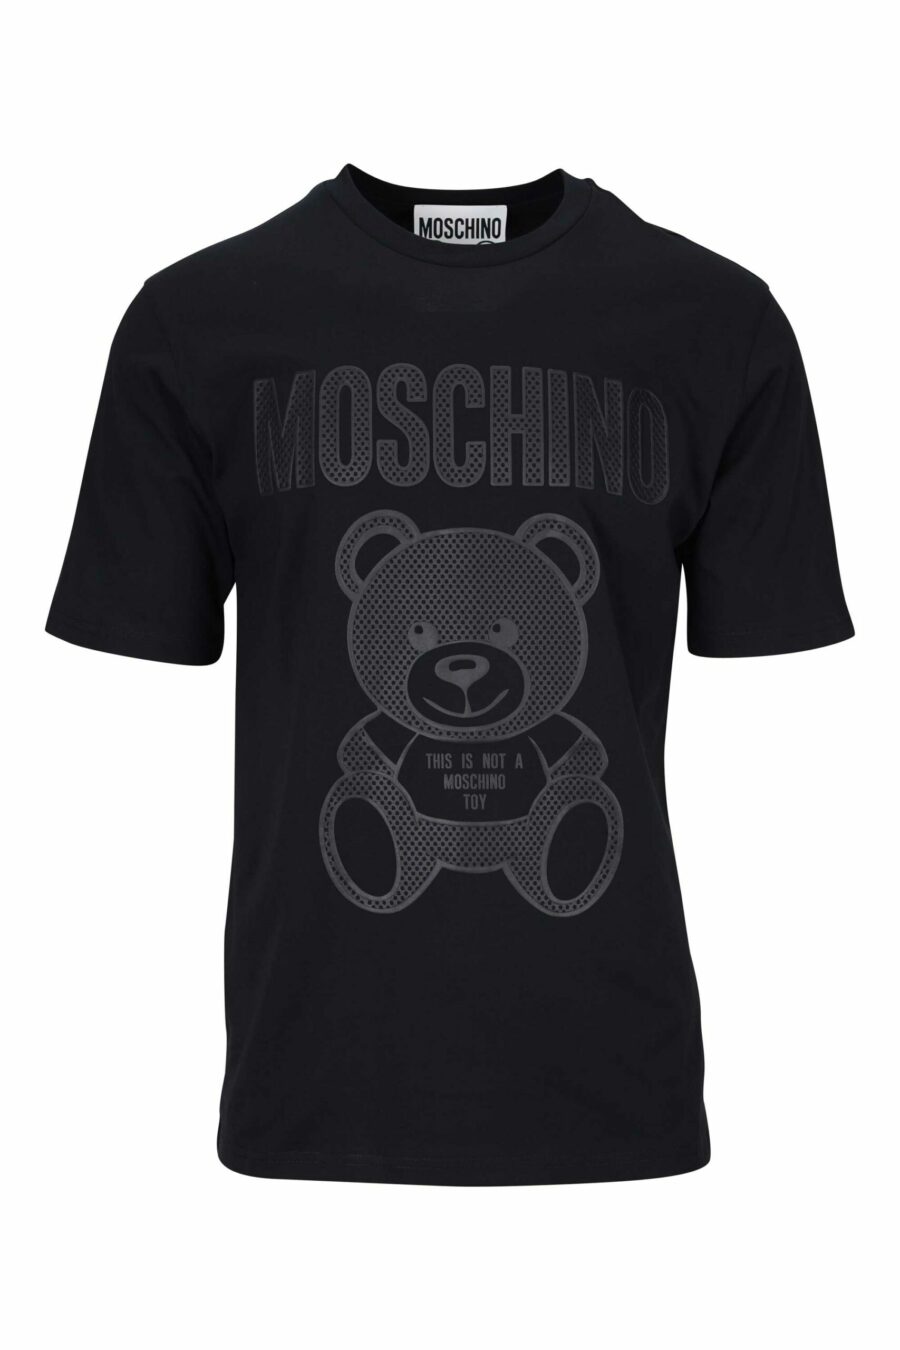 T-shirt noir avec maxilogo ours monochrome à pois - 667113455754 scaled